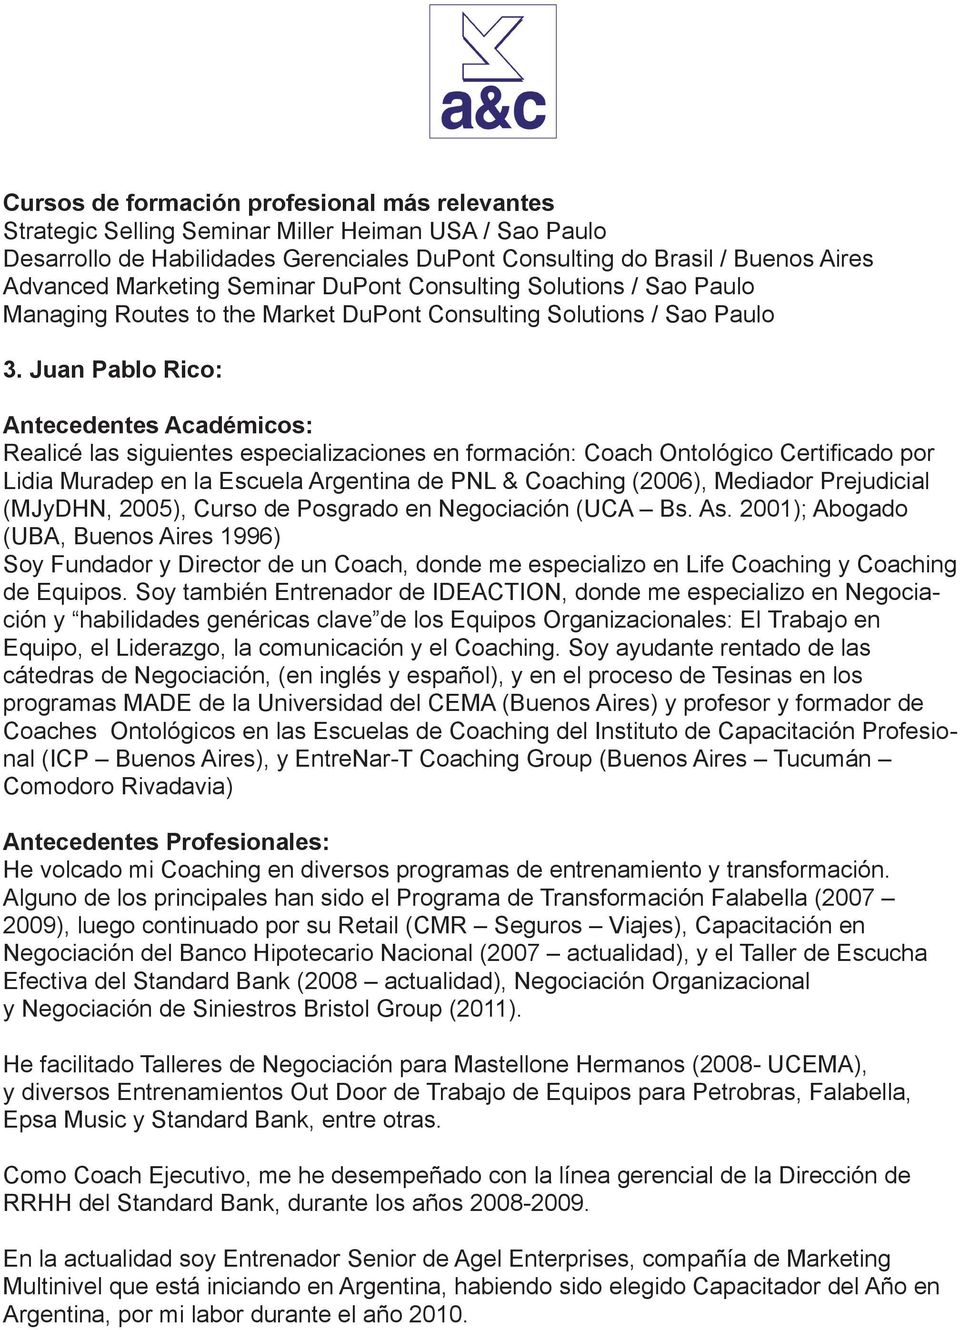 Juan Pablo Rico: Antecedentes Académicos: Realicé las siguientes especializaciones en formación: Coach Ontológico Certificado por Lidia Muradep en la Escuela Argentina de PNL & Coaching (2006),